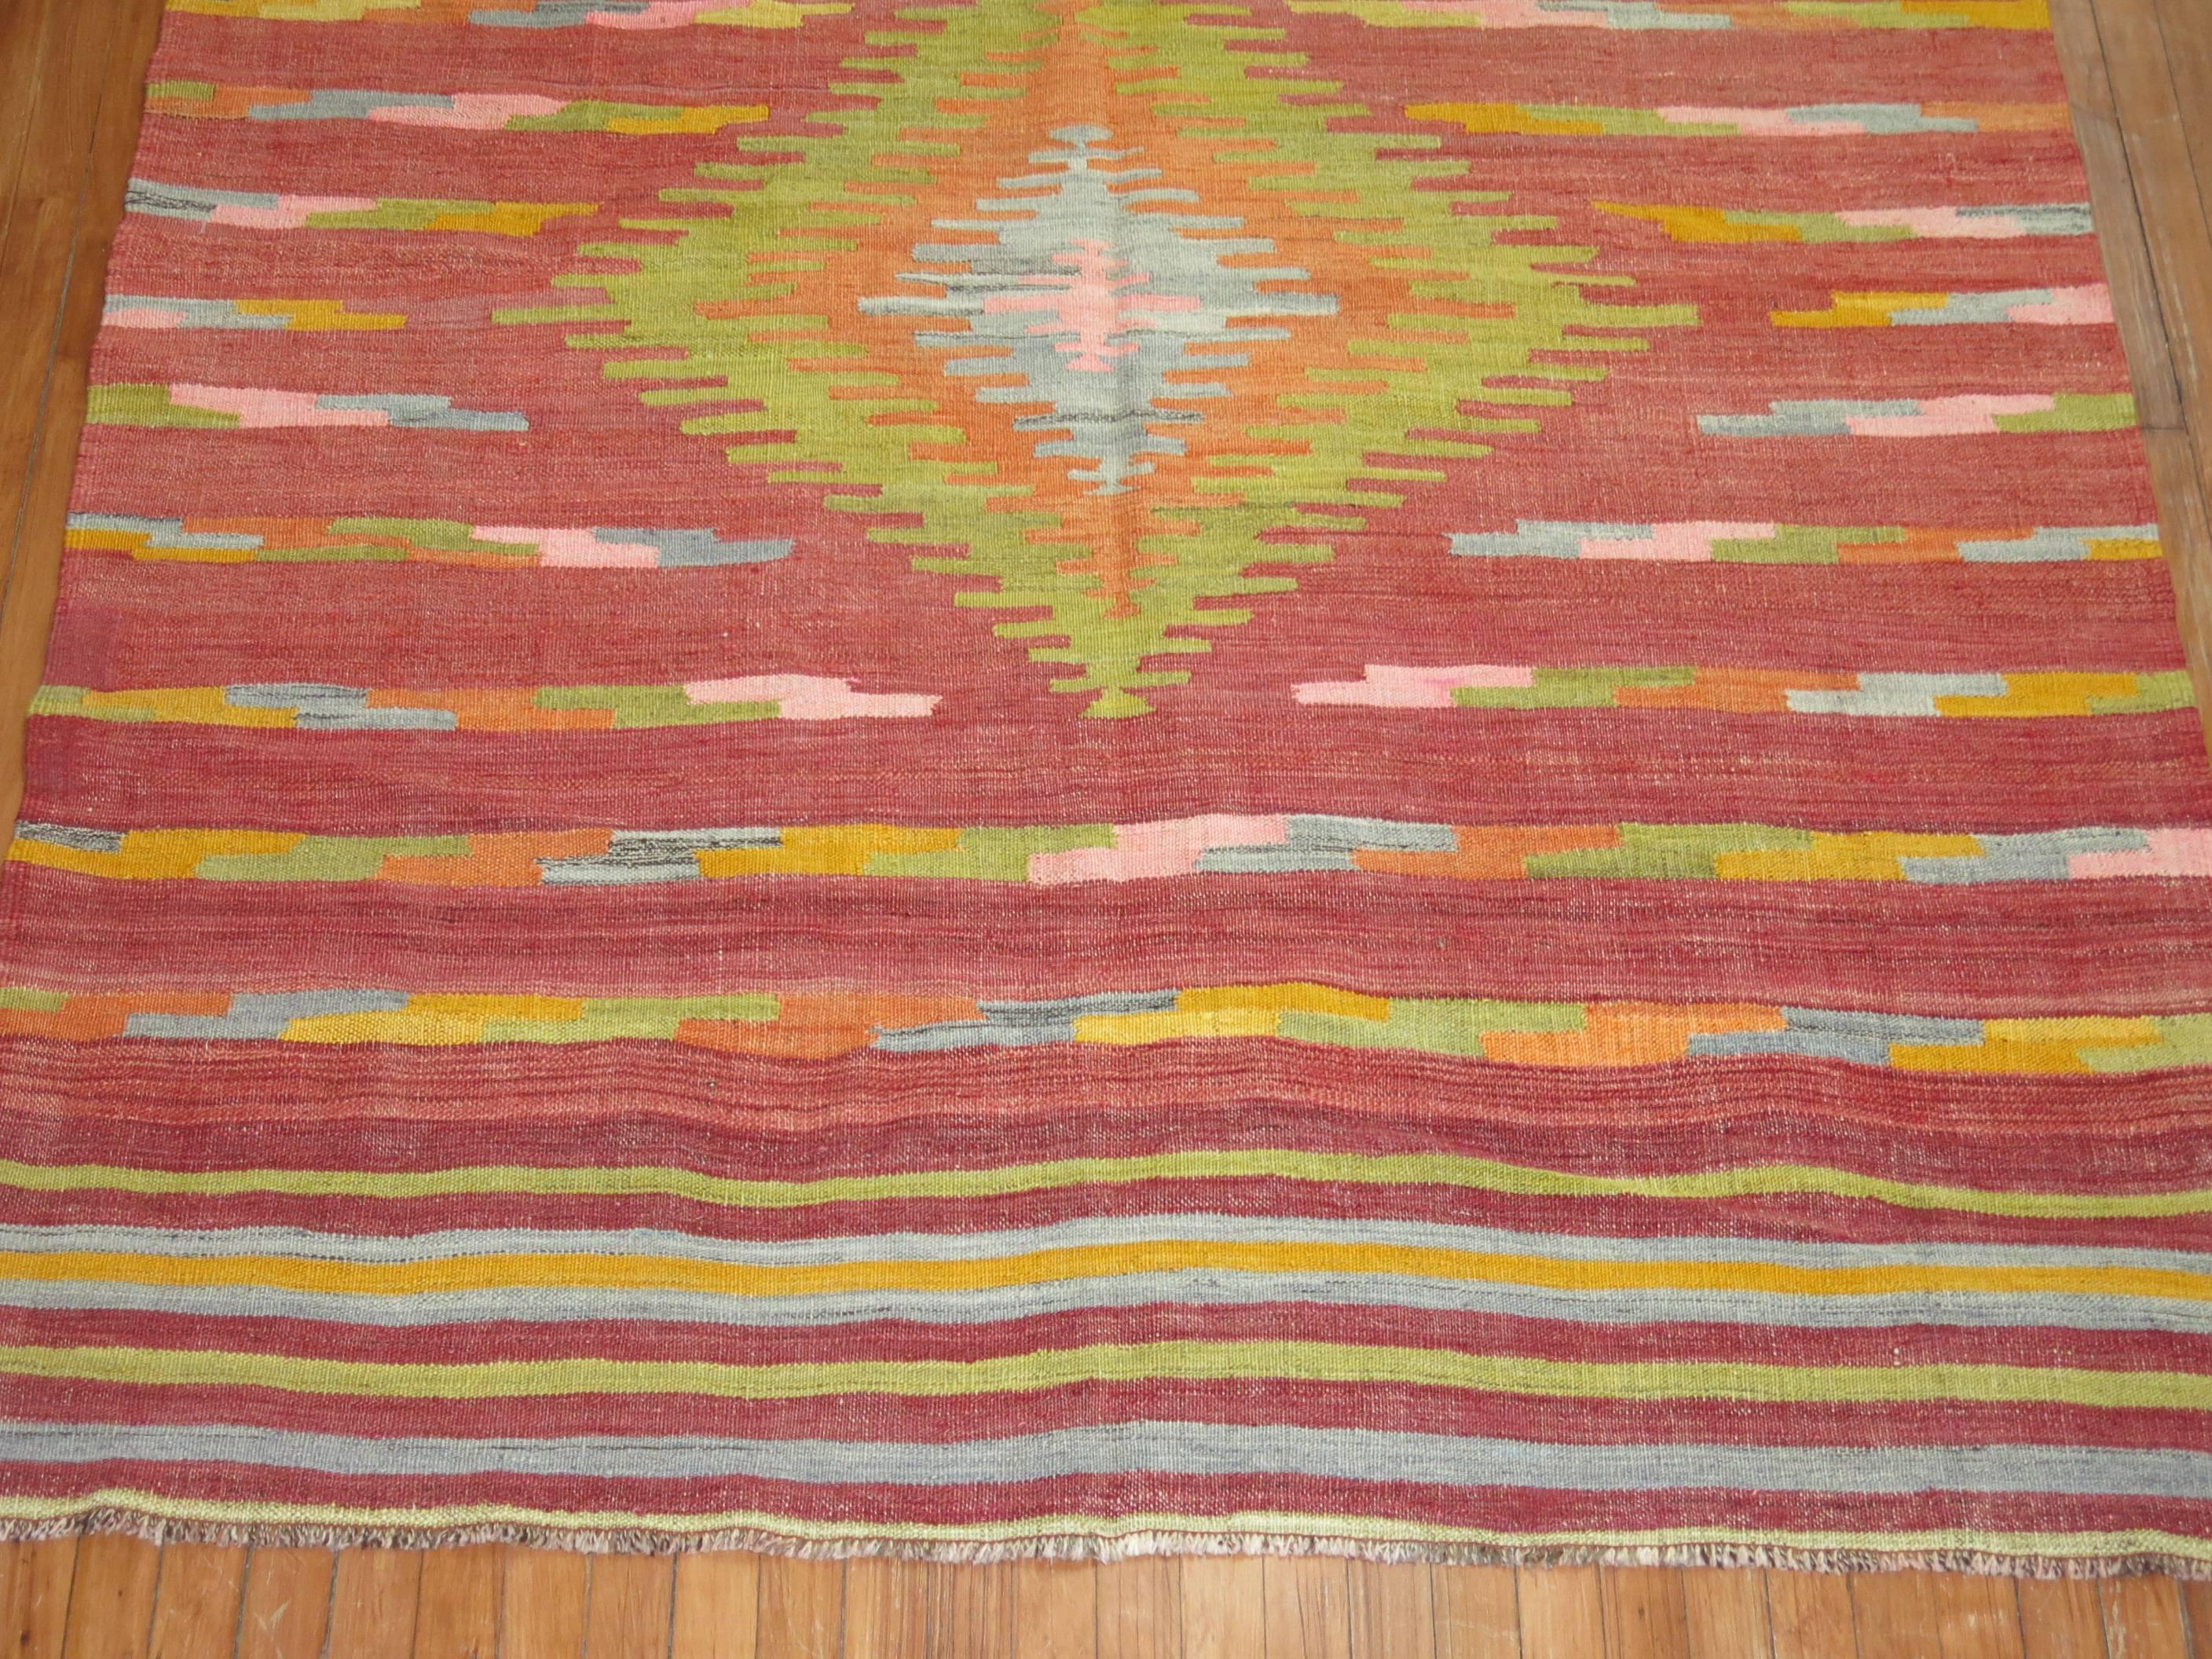 Un tapis turc Kilim coloré à tissage plat. Grand médaillon vert tilleul avec des accents orange, rose, gris sur un champ rouge brûlé avec un motif rayé aux deux extrémités.